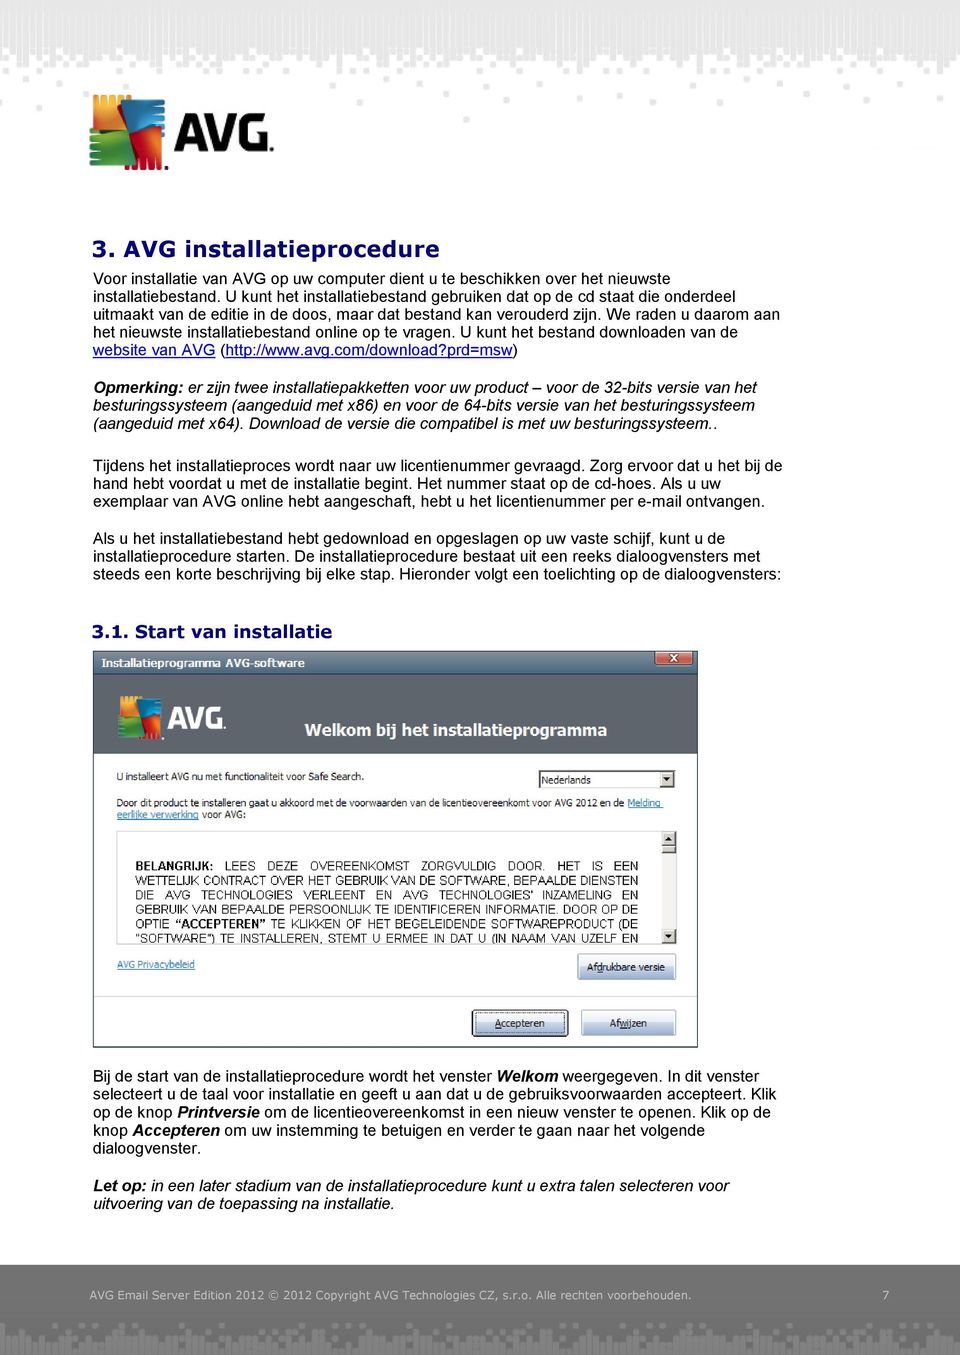 We raden u daarom aan het nieuwste installatiebestand online op te vragen. U kunt het bestand downloaden van de website van AVG (http://www.avg.com/download?